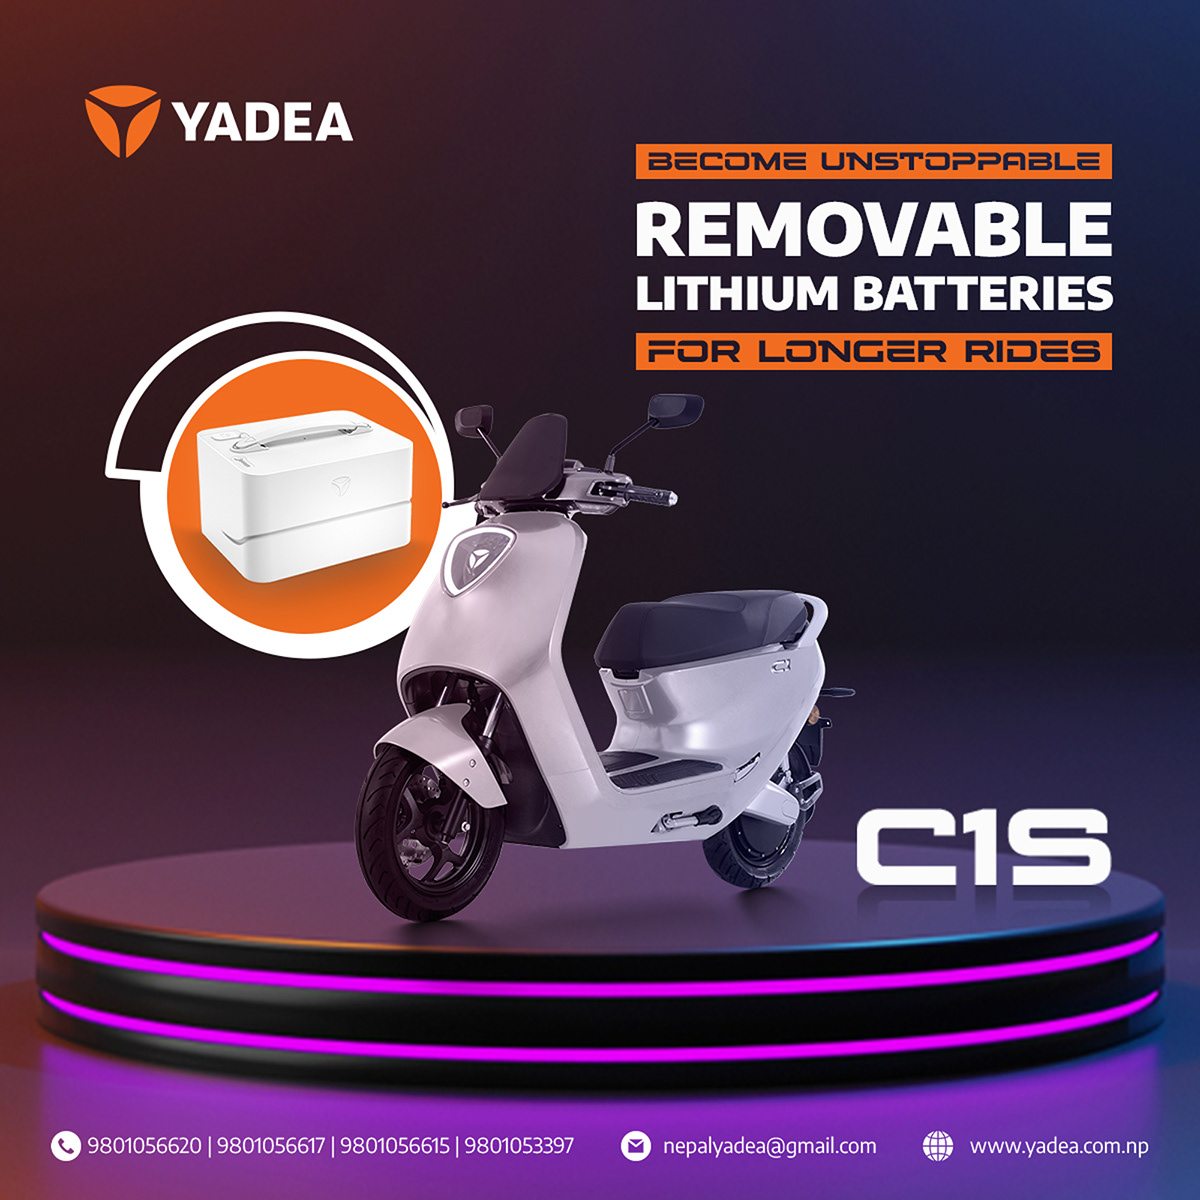 c1s g5 graphic design  s like scooters Scooters eléctricos YADEA yadea emtb yadea nepal yadea scooters